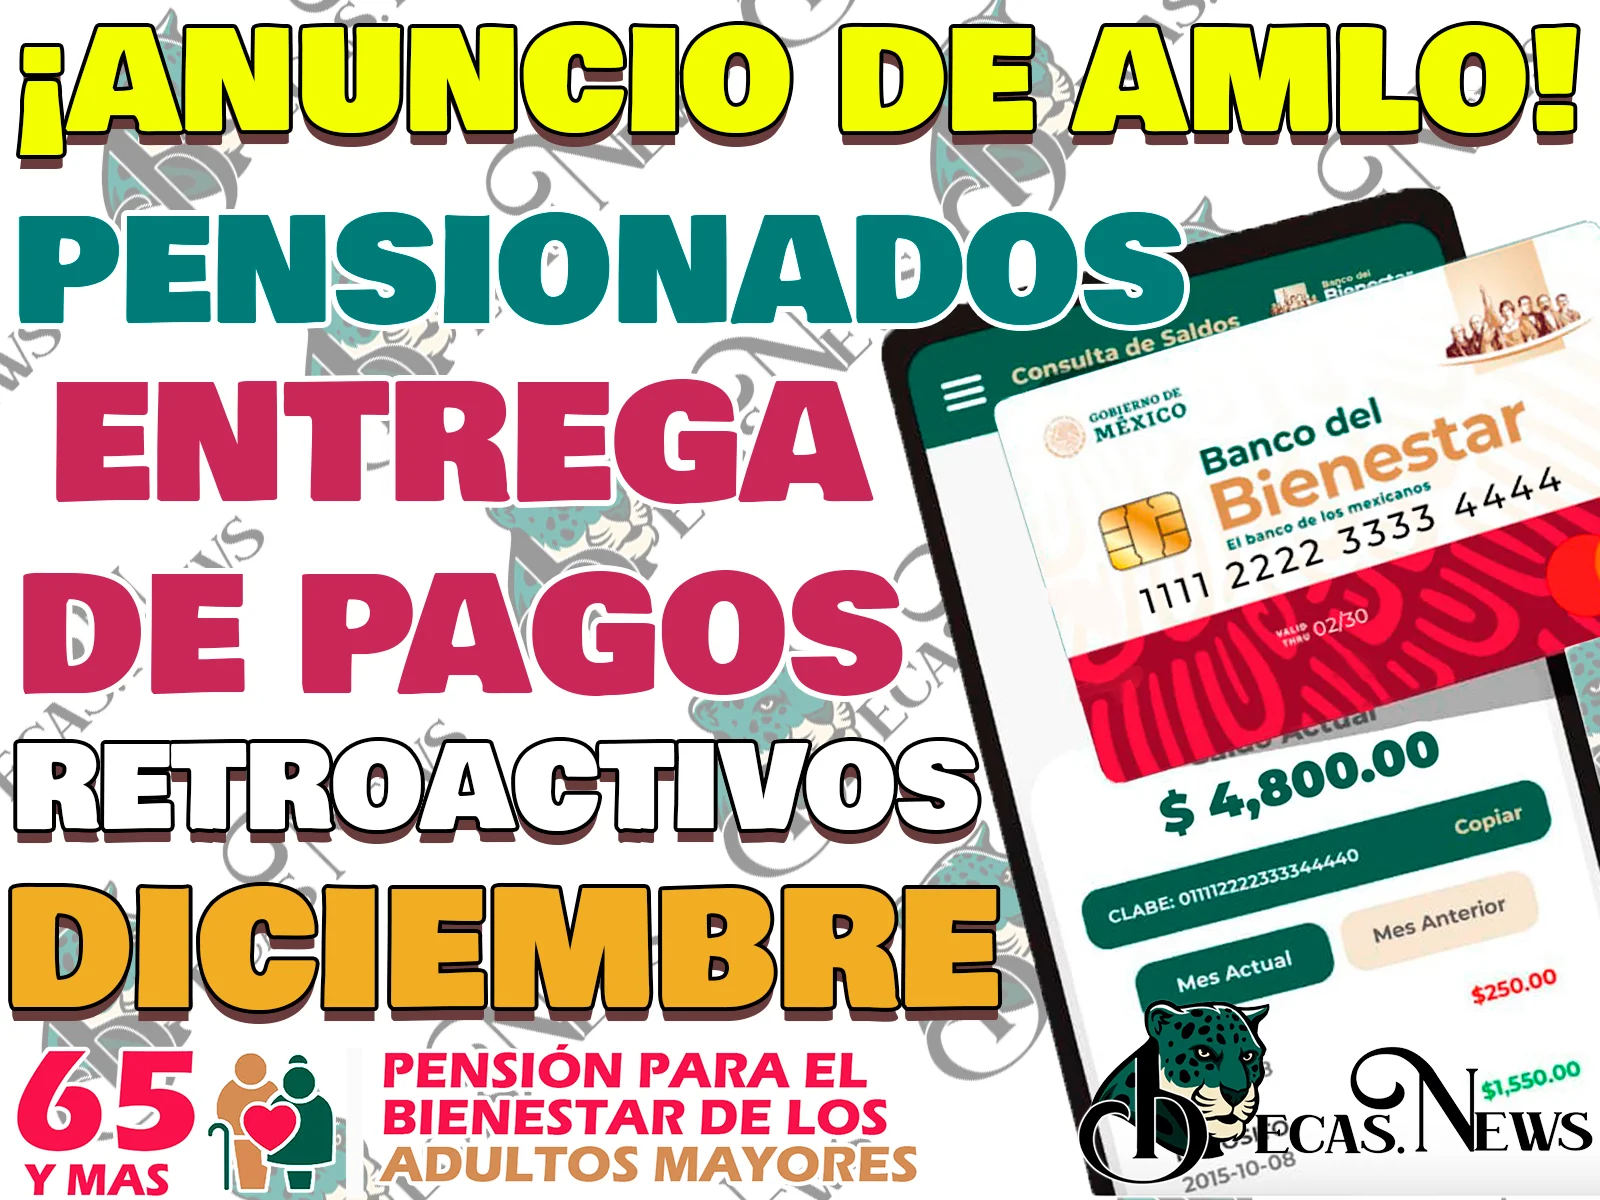 AMLO anuncia entrega de Pagos RETROACTIVOS para Pensionados del Bienestar